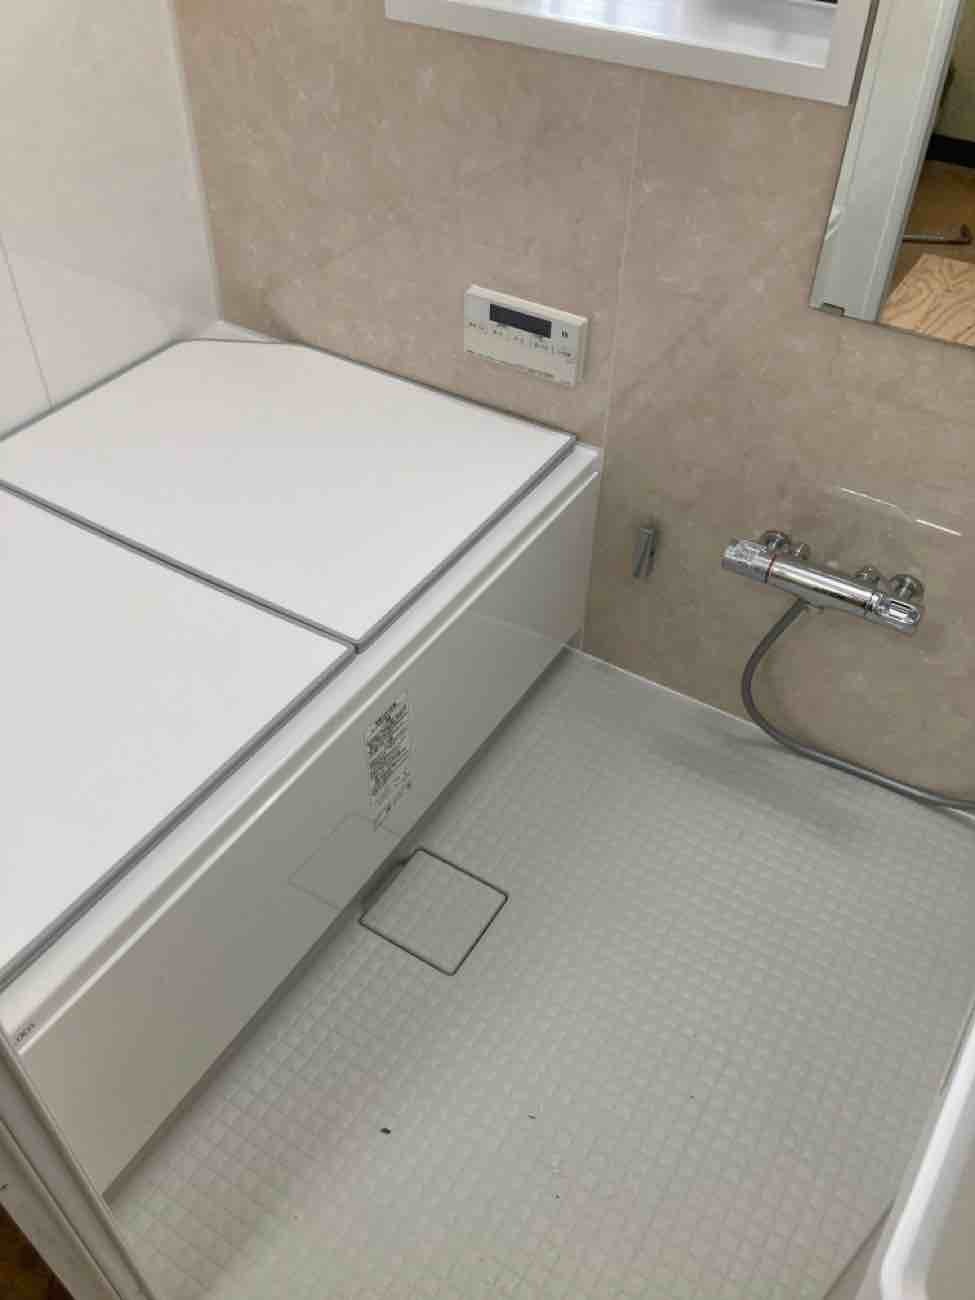 【埼玉県吉川市】K様邸浴室タイル風呂からユニットバス工事が完了しました。リデアMタイプ 画像